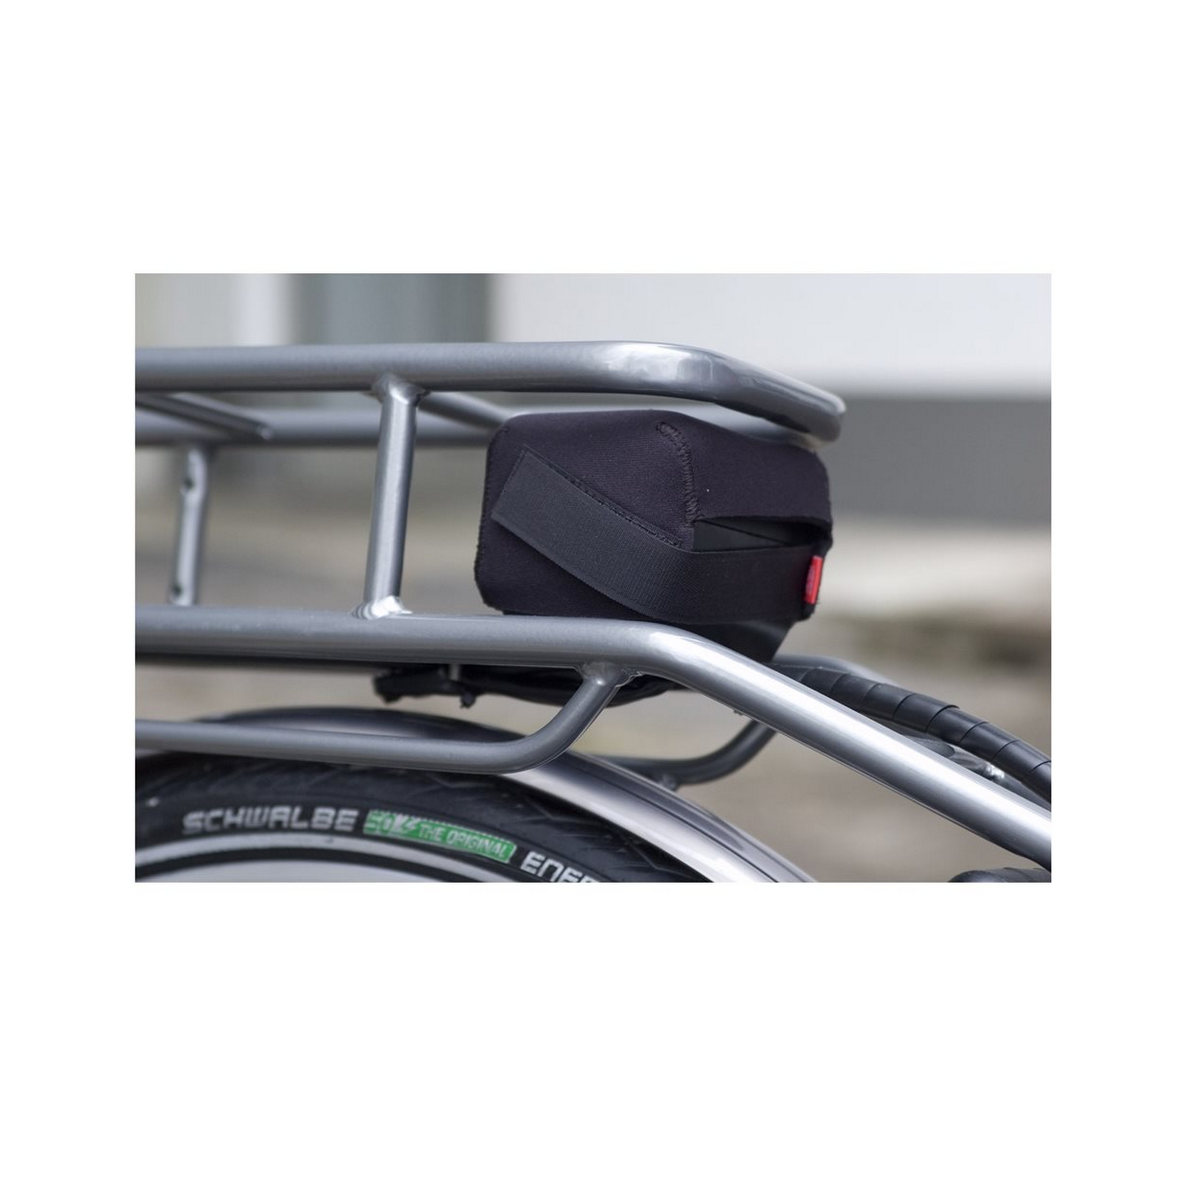 Cover di protezione contatti batteria al portapacchi taglia L / Bosch Yamaha Shimano